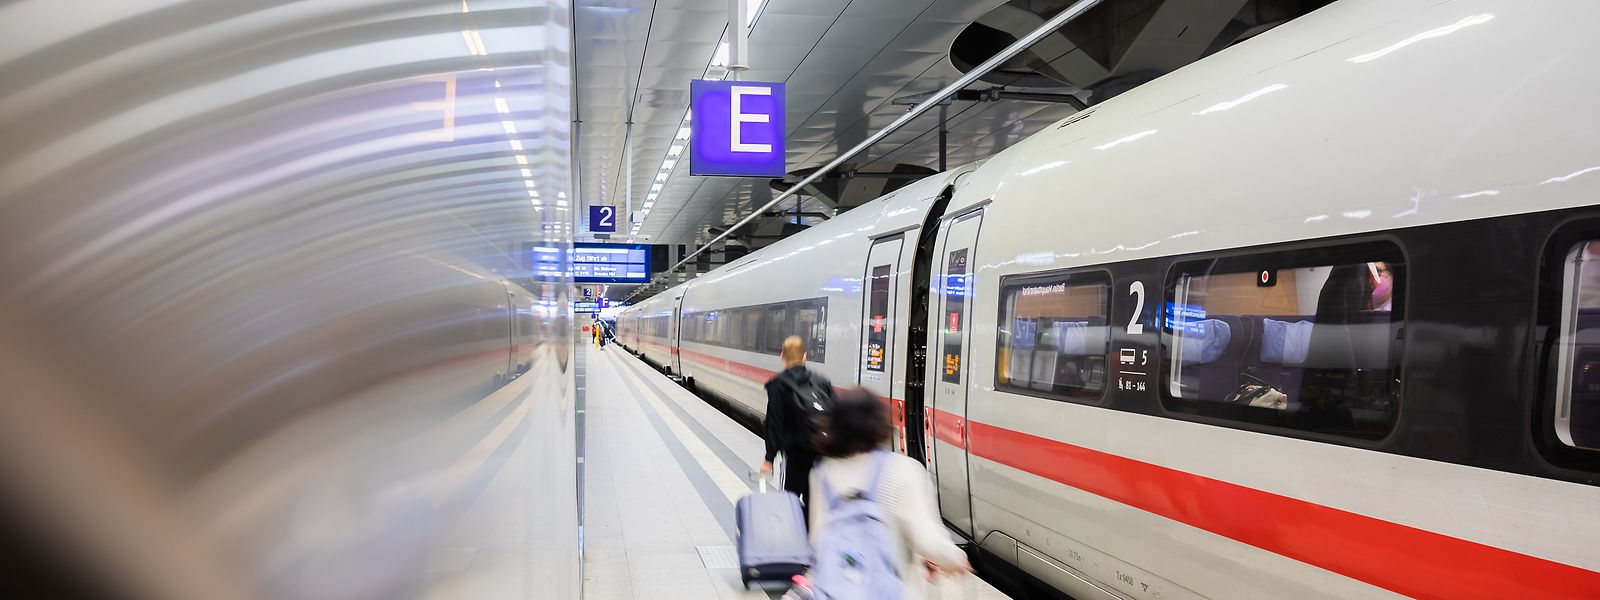 Der Beitritt der Deutschen Bahn zur Star Alliance wird als starkes Zeichen für die Mobilitätswende gewertet und ermöglicht Flug/Zug-Kombinationen.